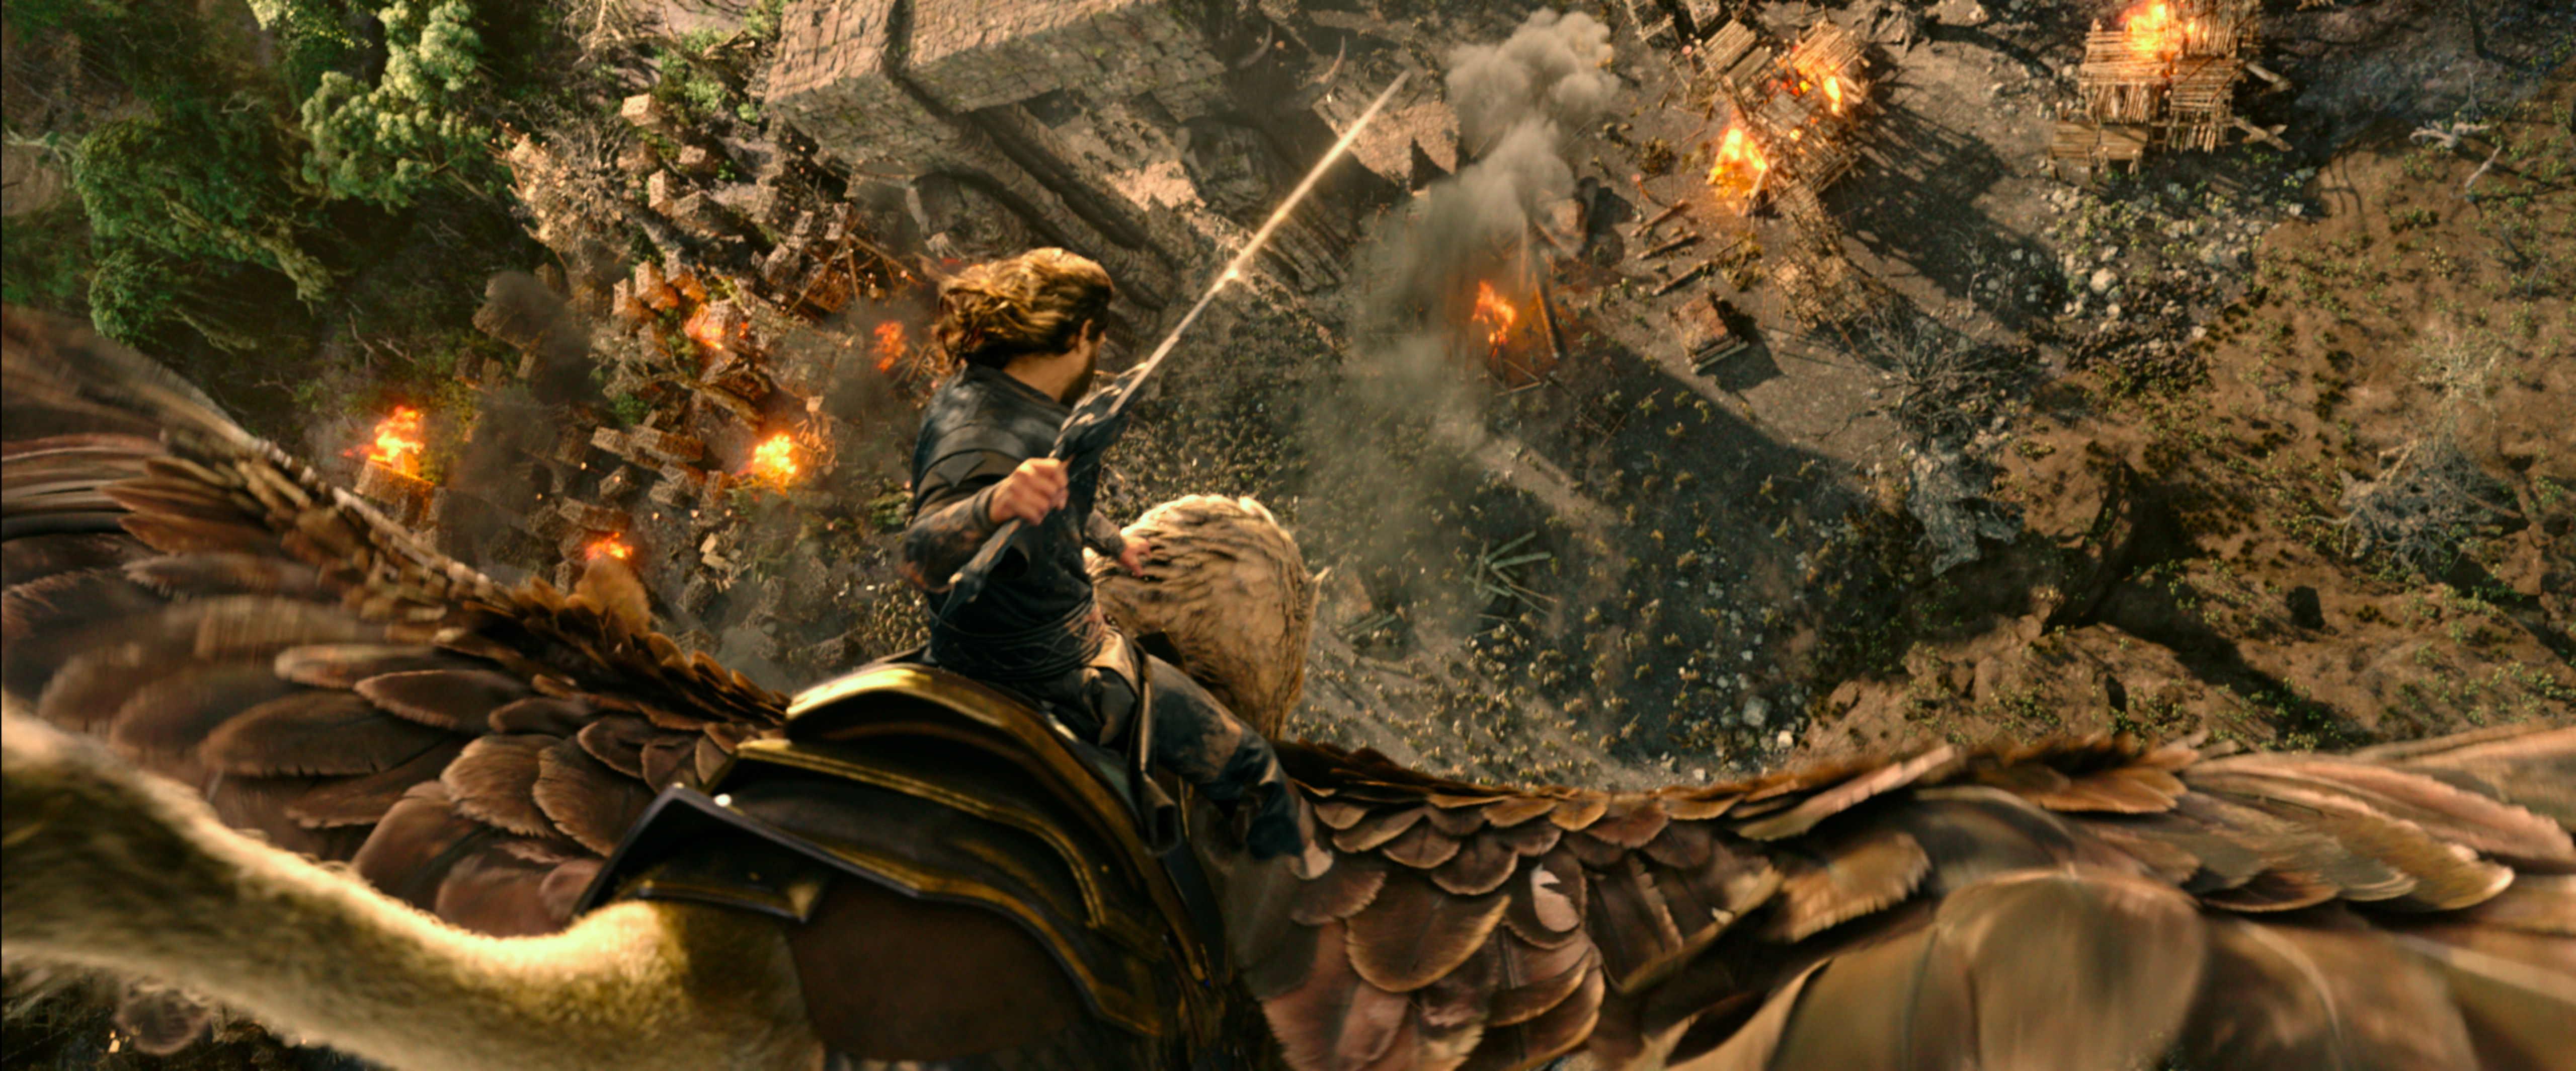 Warcraft Movie Battle Scene - HD Wallpaper 